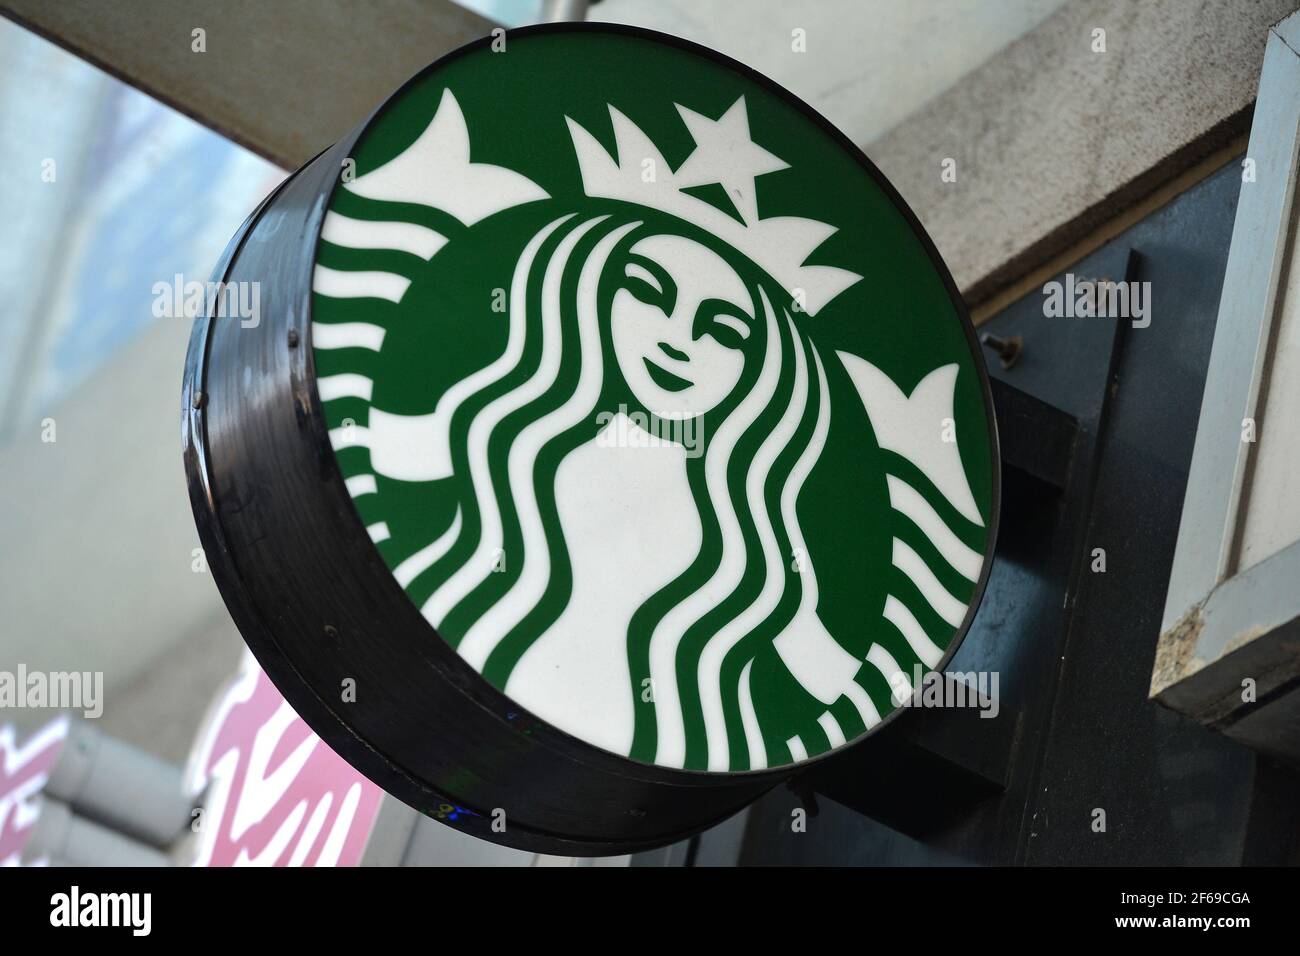 Vista del logotipo de “Siren” de Starbucks Coffeehouse Company, que es el  puente nasal del lado izquierdo se dibuja un poco más bajo que el de su  derecha, Nueva York, NY, 30